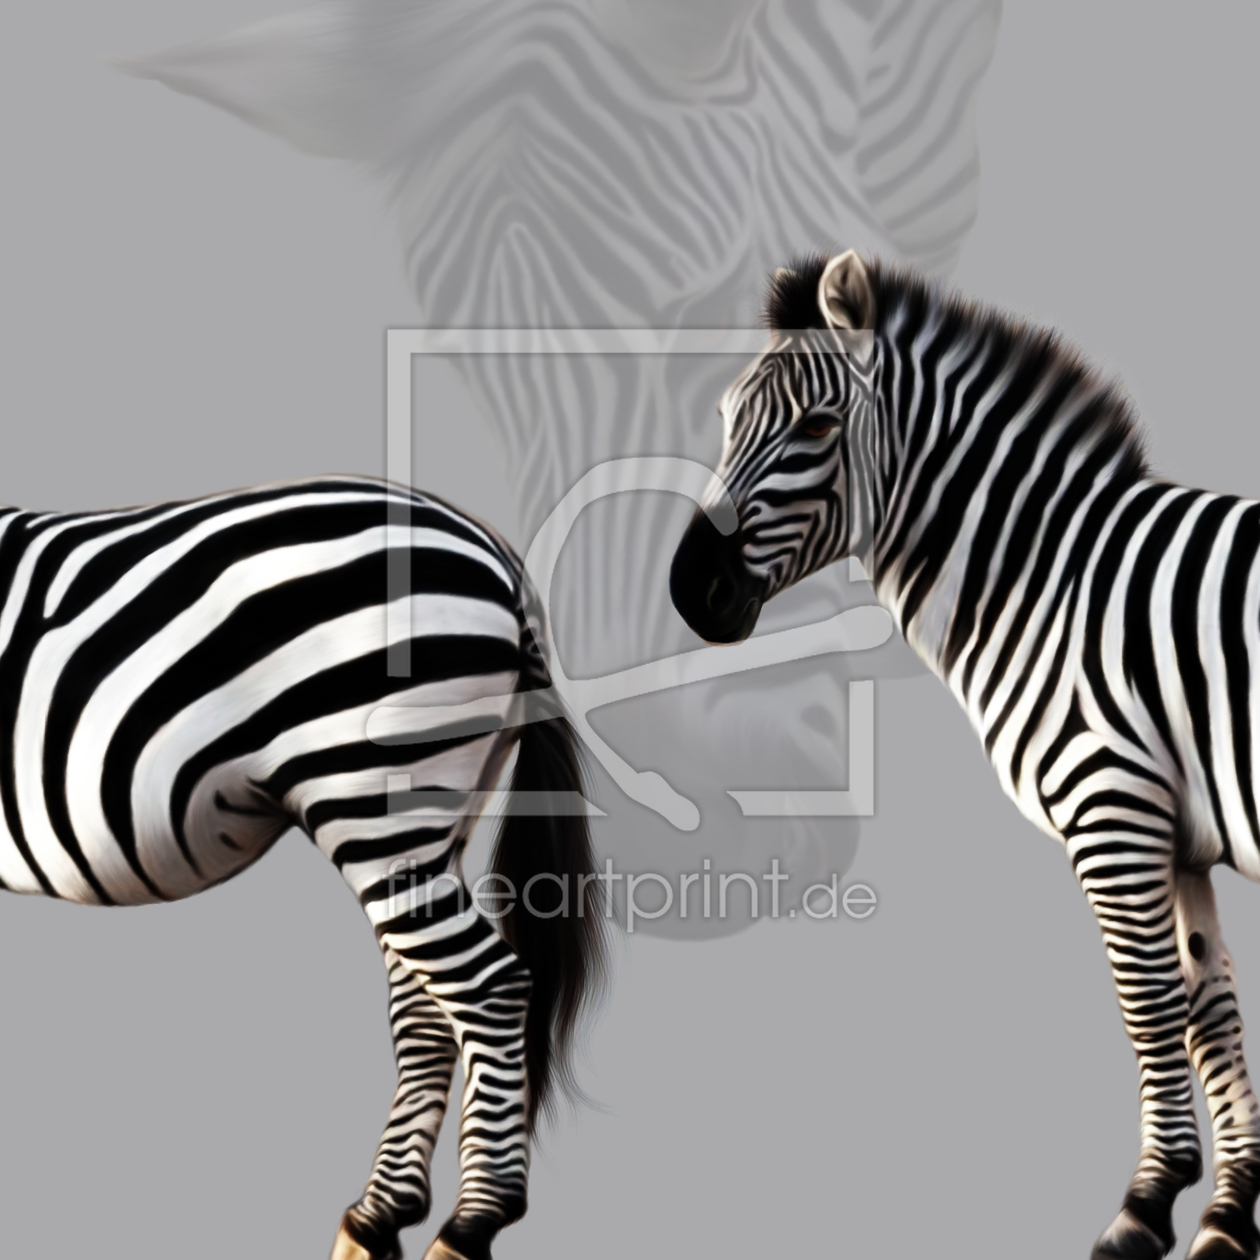 Bild-Nr.: 10595193 Zebra erstellt von Maike Straßburg